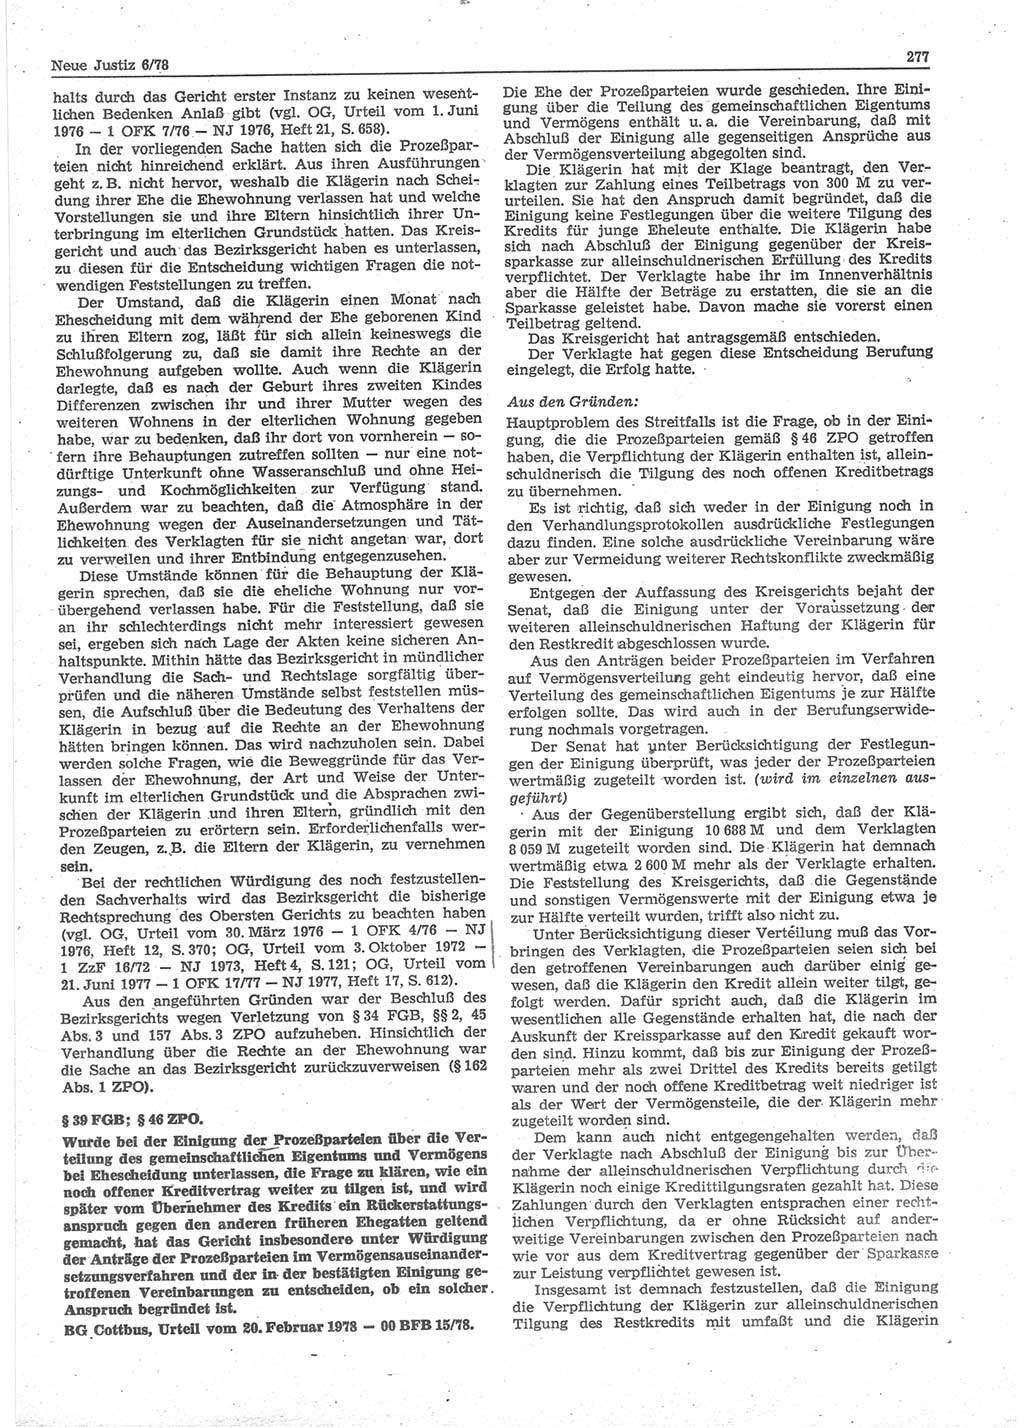 Neue Justiz (NJ), Zeitschrift für sozialistisches Recht und Gesetzlichkeit [Deutsche Demokratische Republik (DDR)], 32. Jahrgang 1978, Seite 277 (NJ DDR 1978, S. 277)